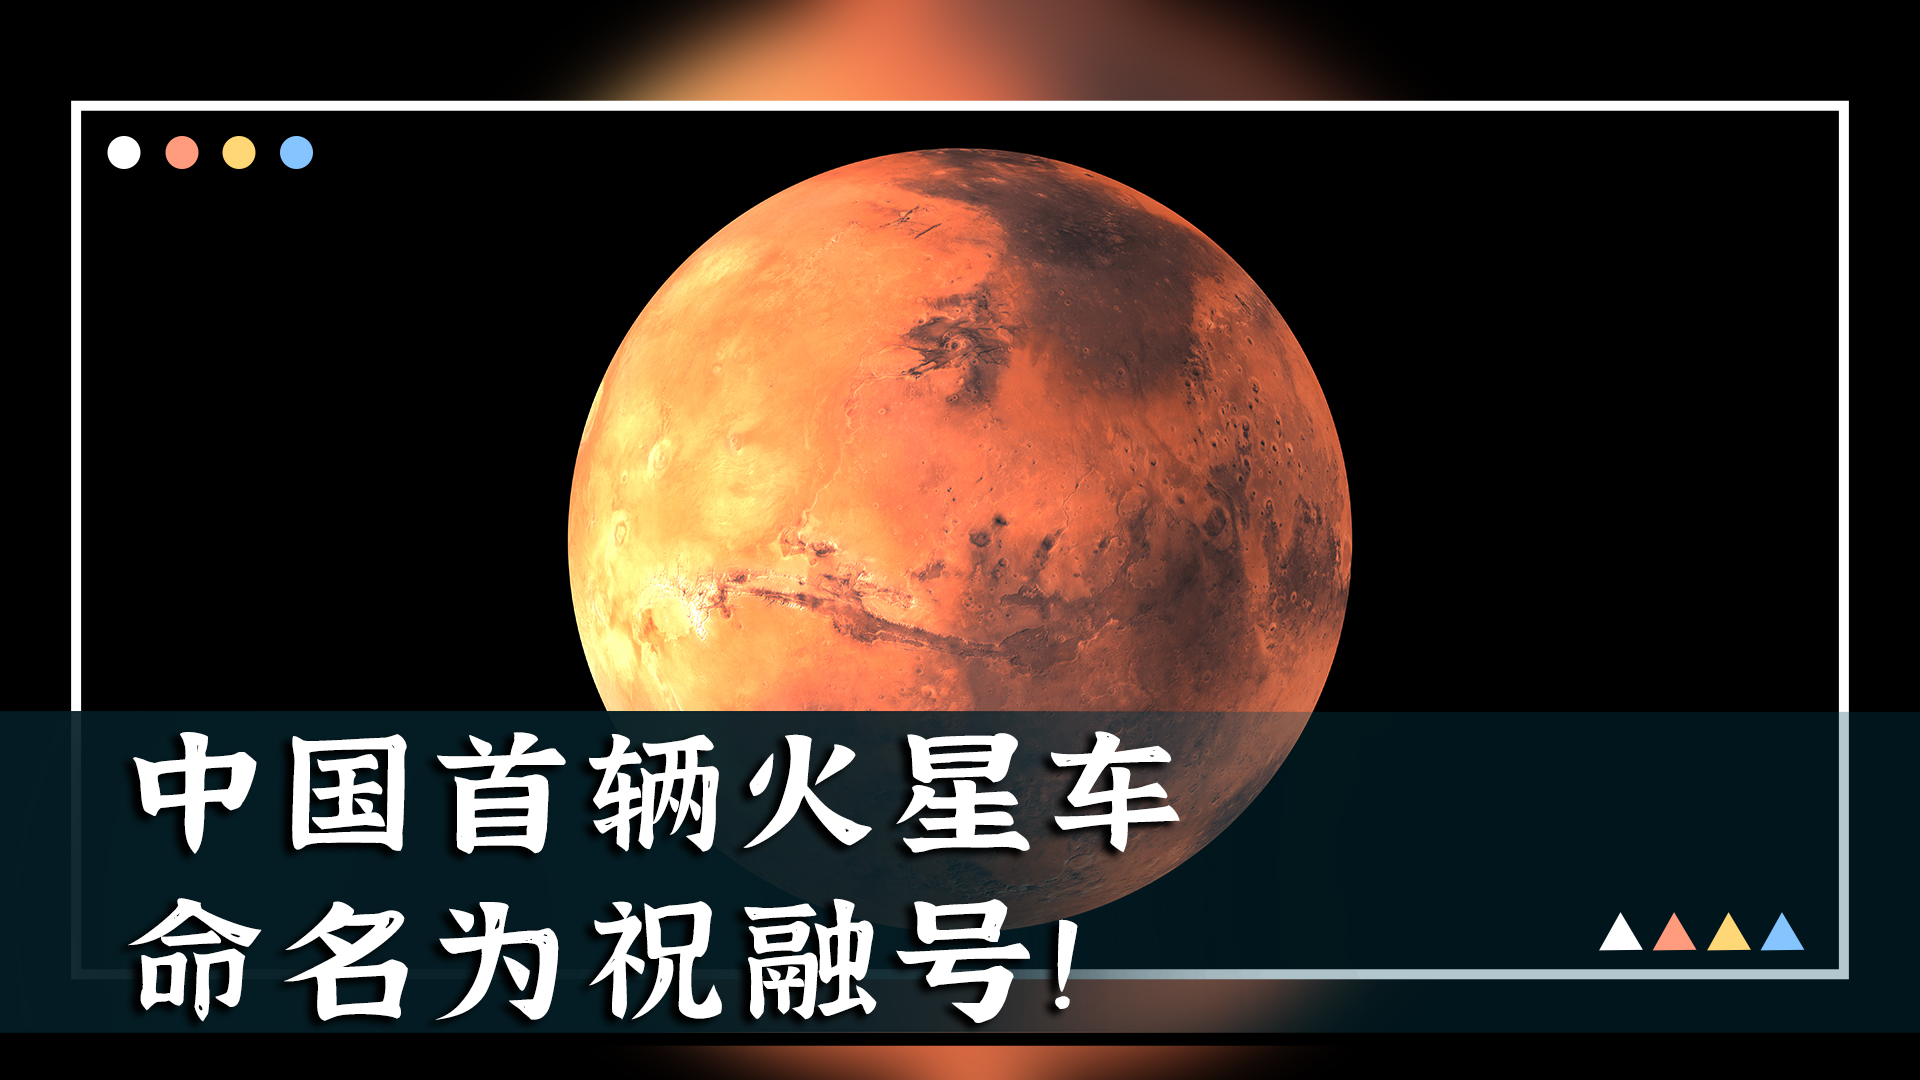 中国首辆火星车命名为“祝融号”！